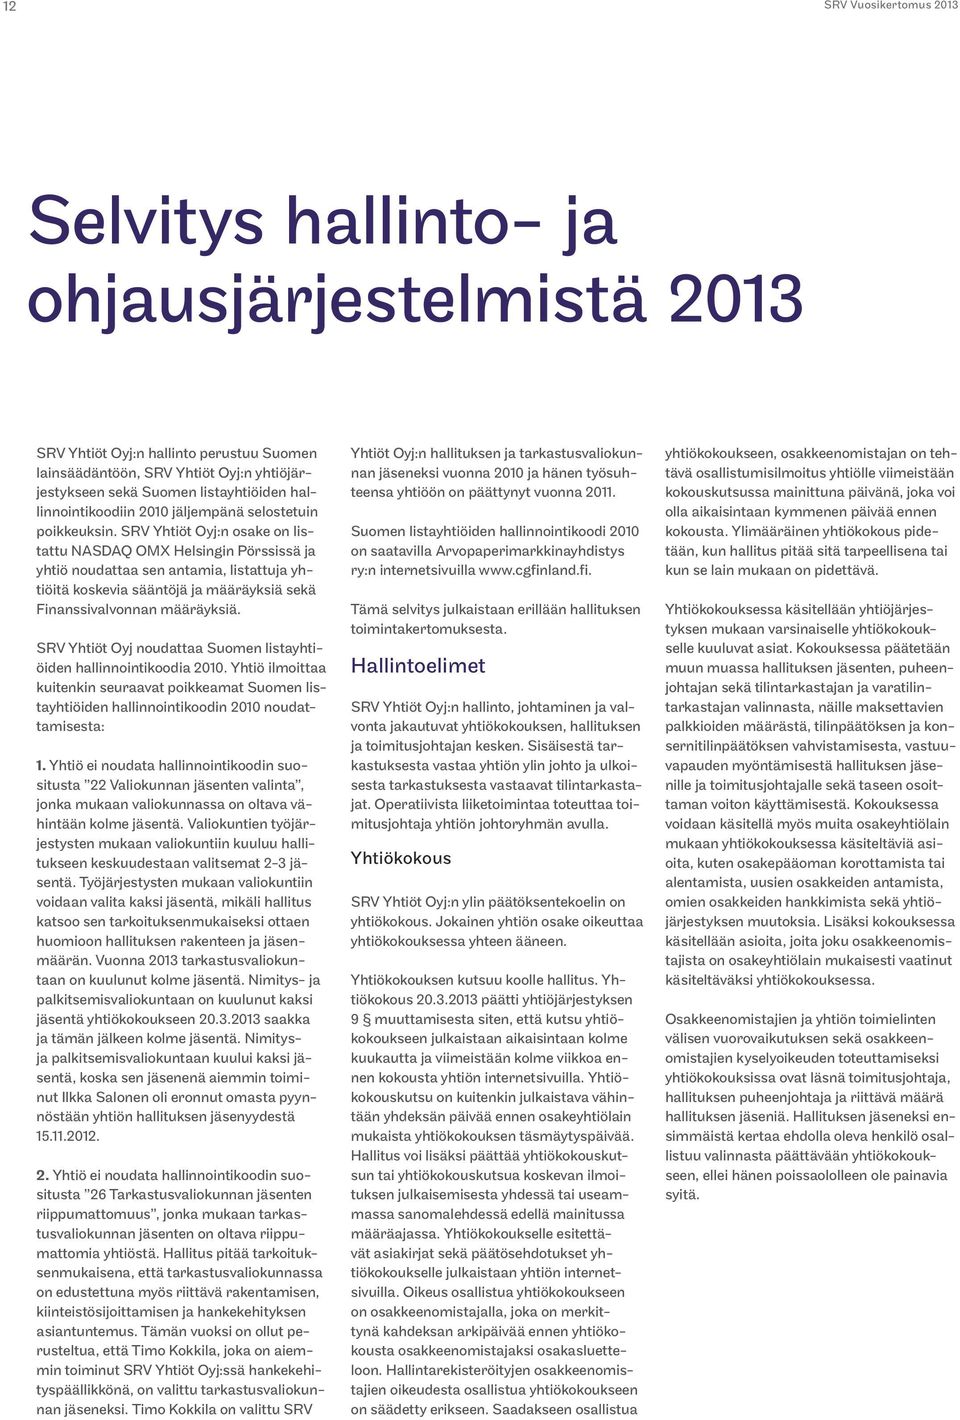 SRV Yhtiöt Oyj:n osake on listattu NASDAQ OMX Helsingin Pörssissä ja yhtiö noudattaa sen antamia, listattuja yhtiöitä koskevia sääntöjä ja määräyksiä sekä Finanssivalvonnan määräyksiä.